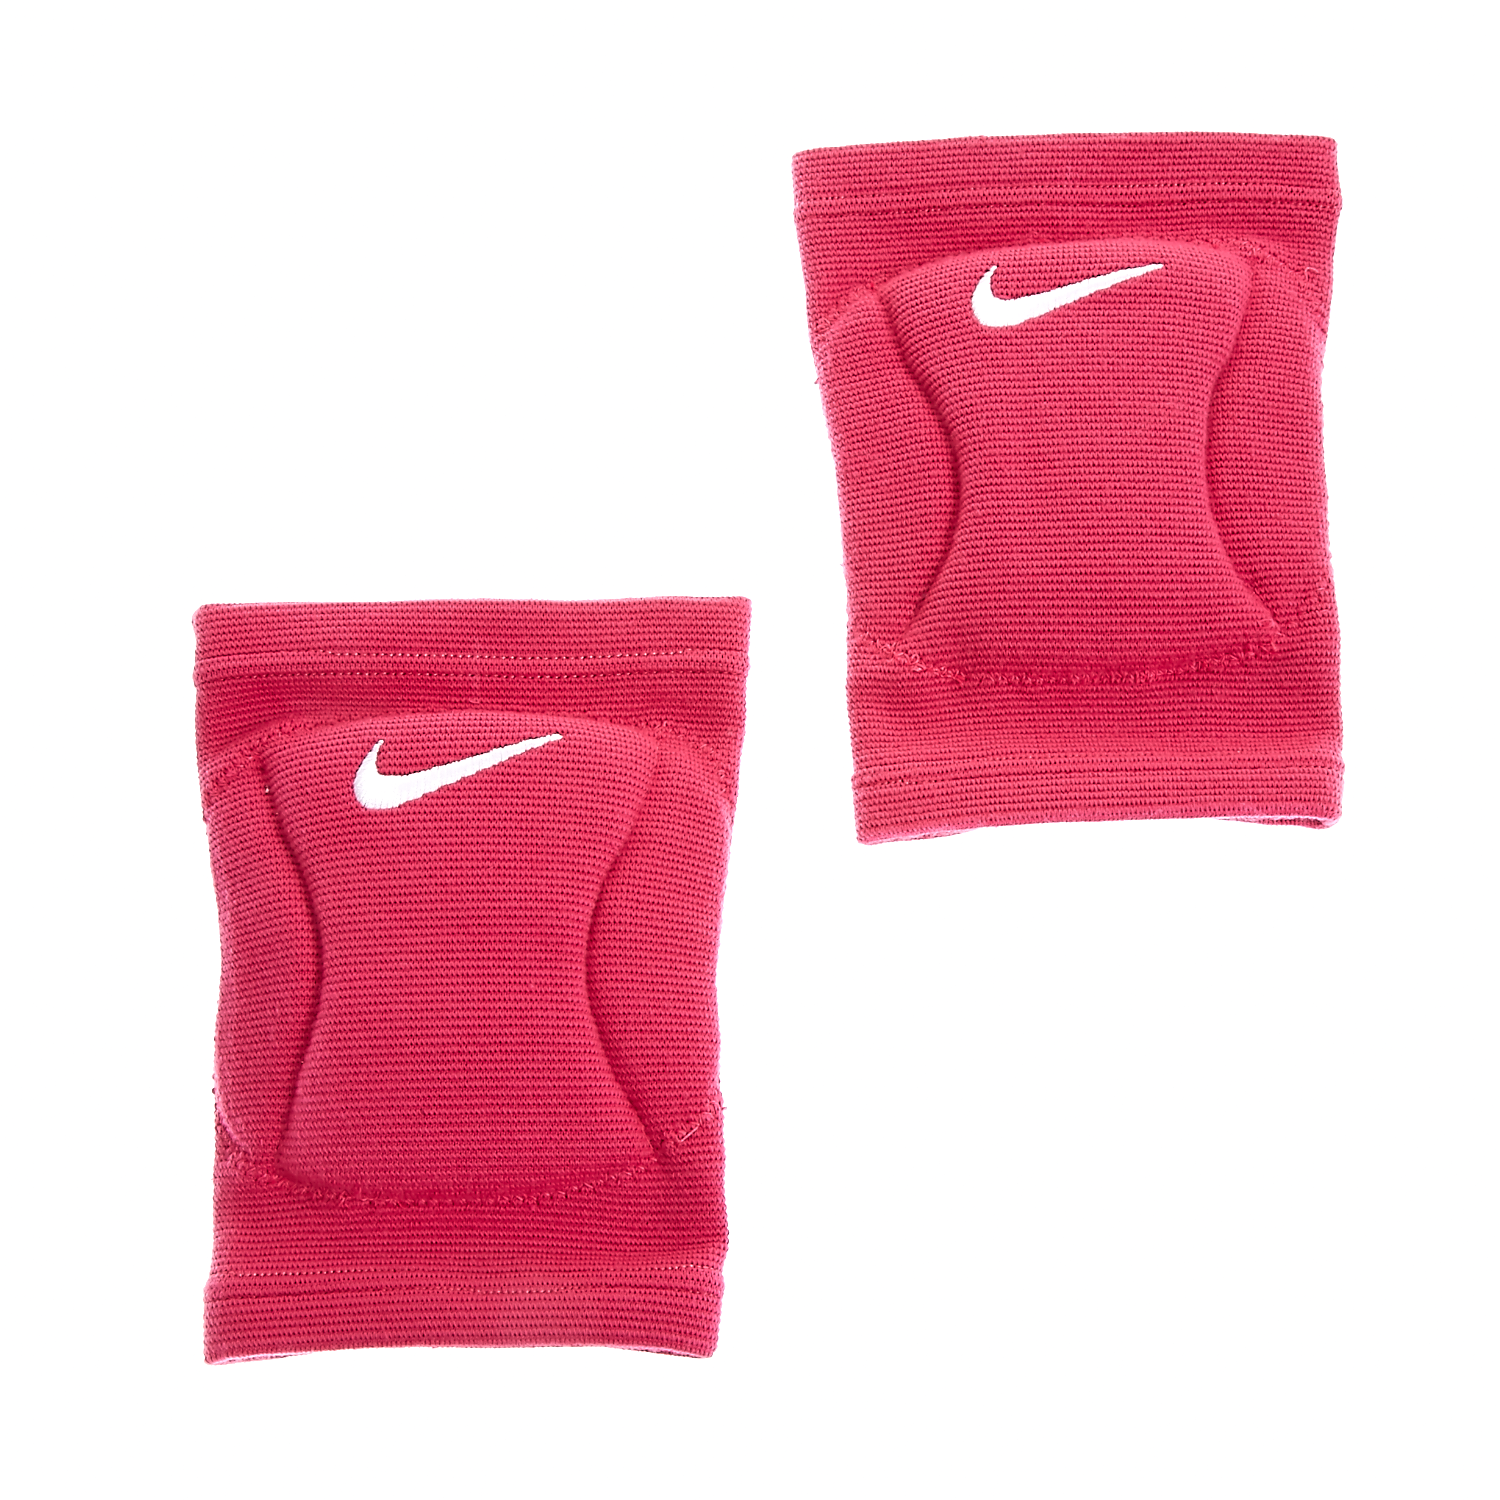 Γυναικεία/Αξεσουάρ/Αθλητικά Είδη/Εξοπλισμός NIKE - Επιγονατίδες Nike ροζ